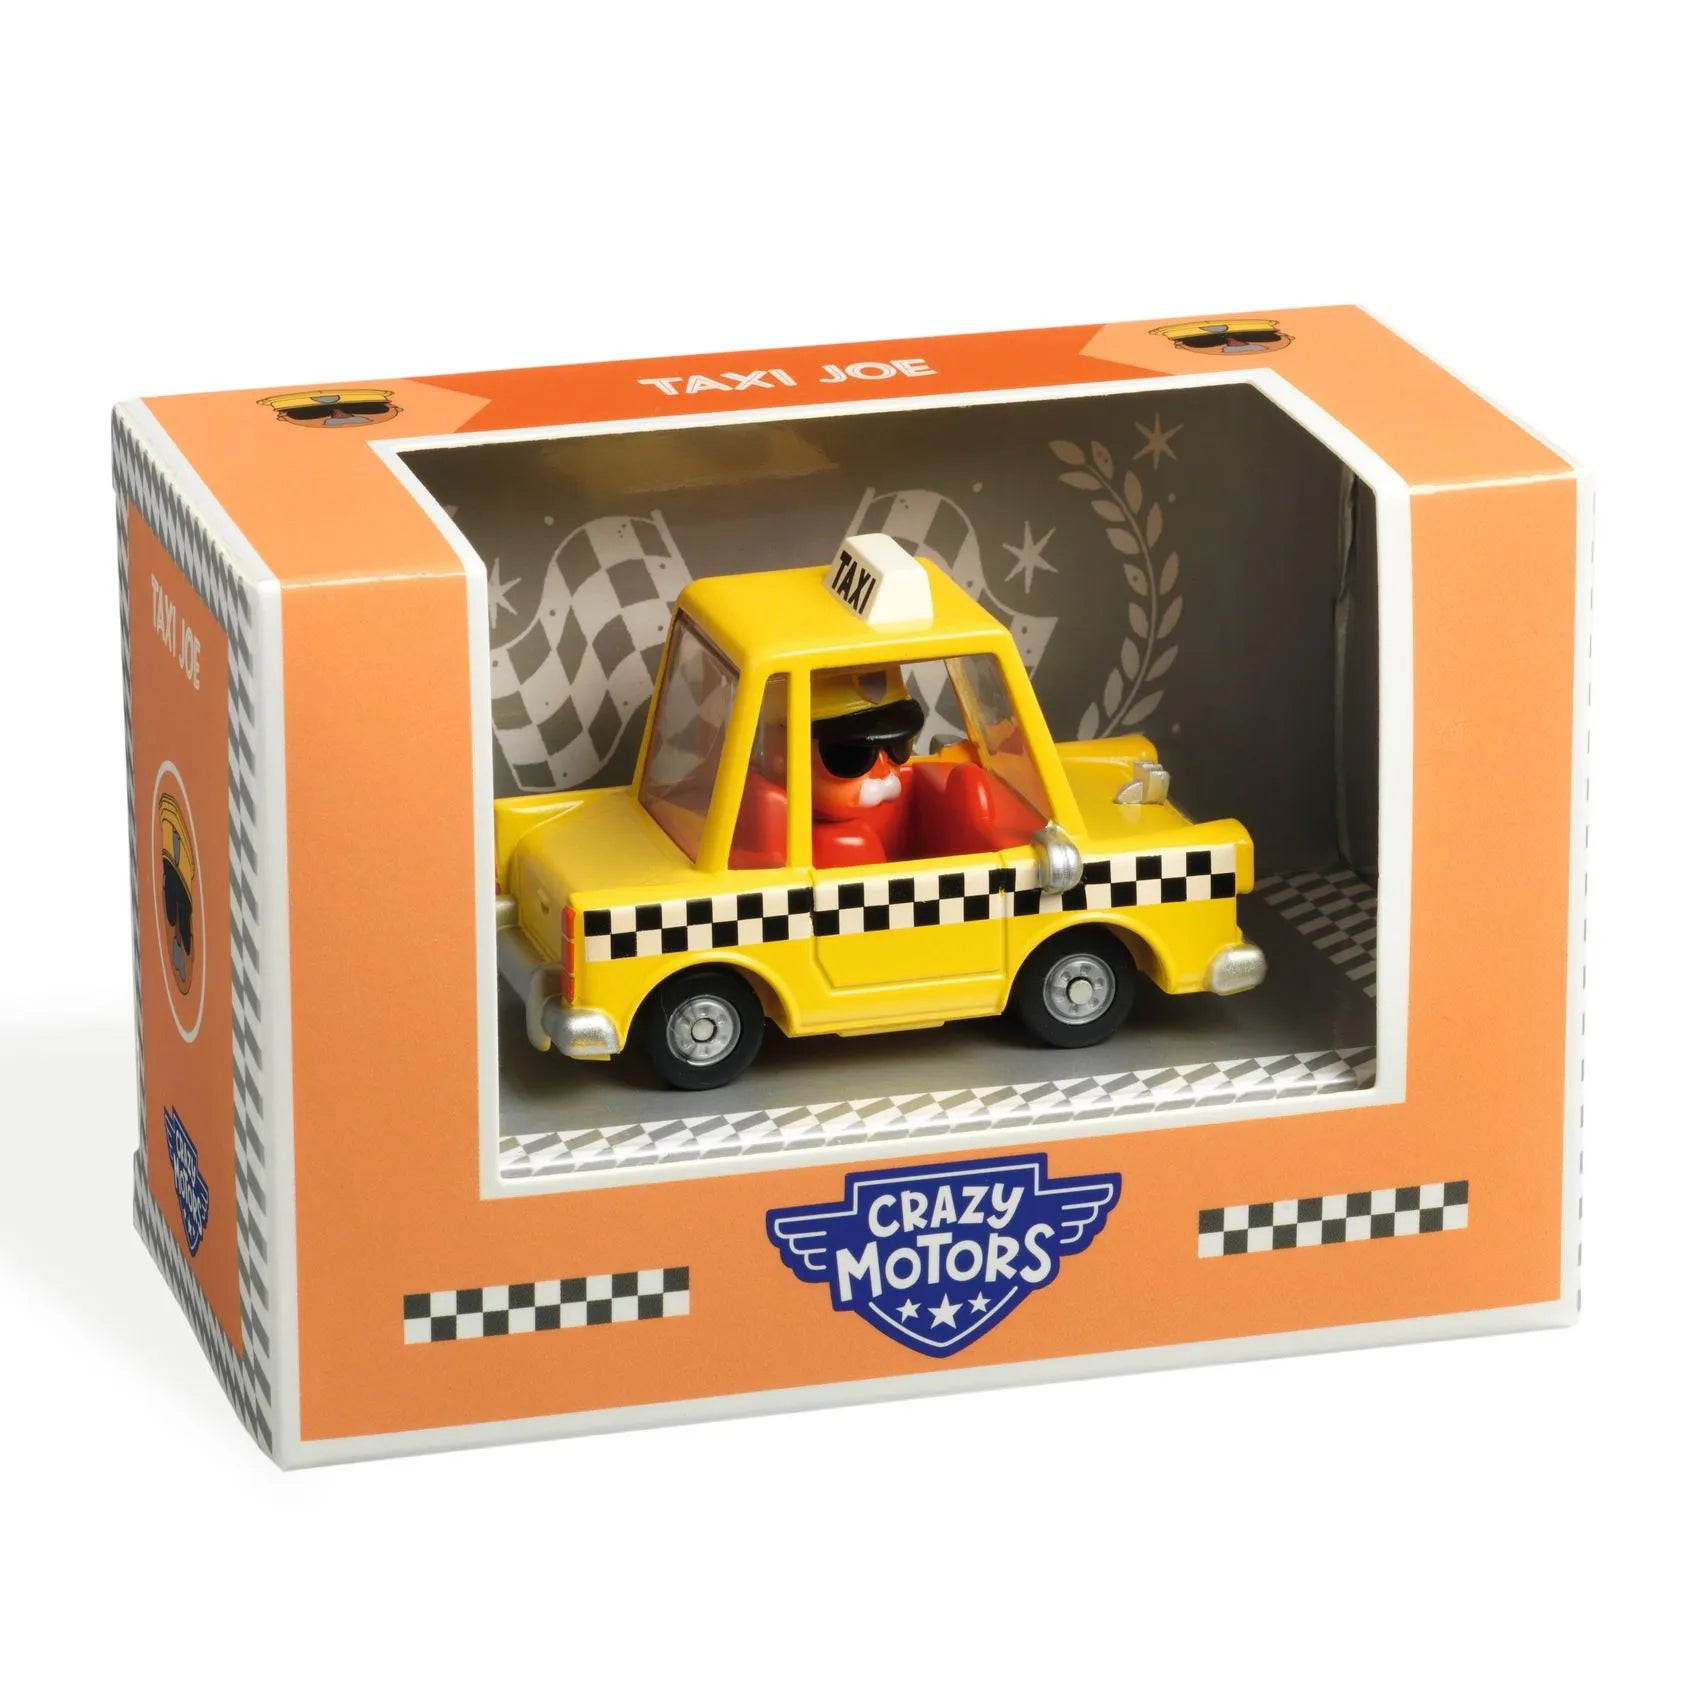 Djeco Crazy Motors Toy Car For Kids – Taxi Joe